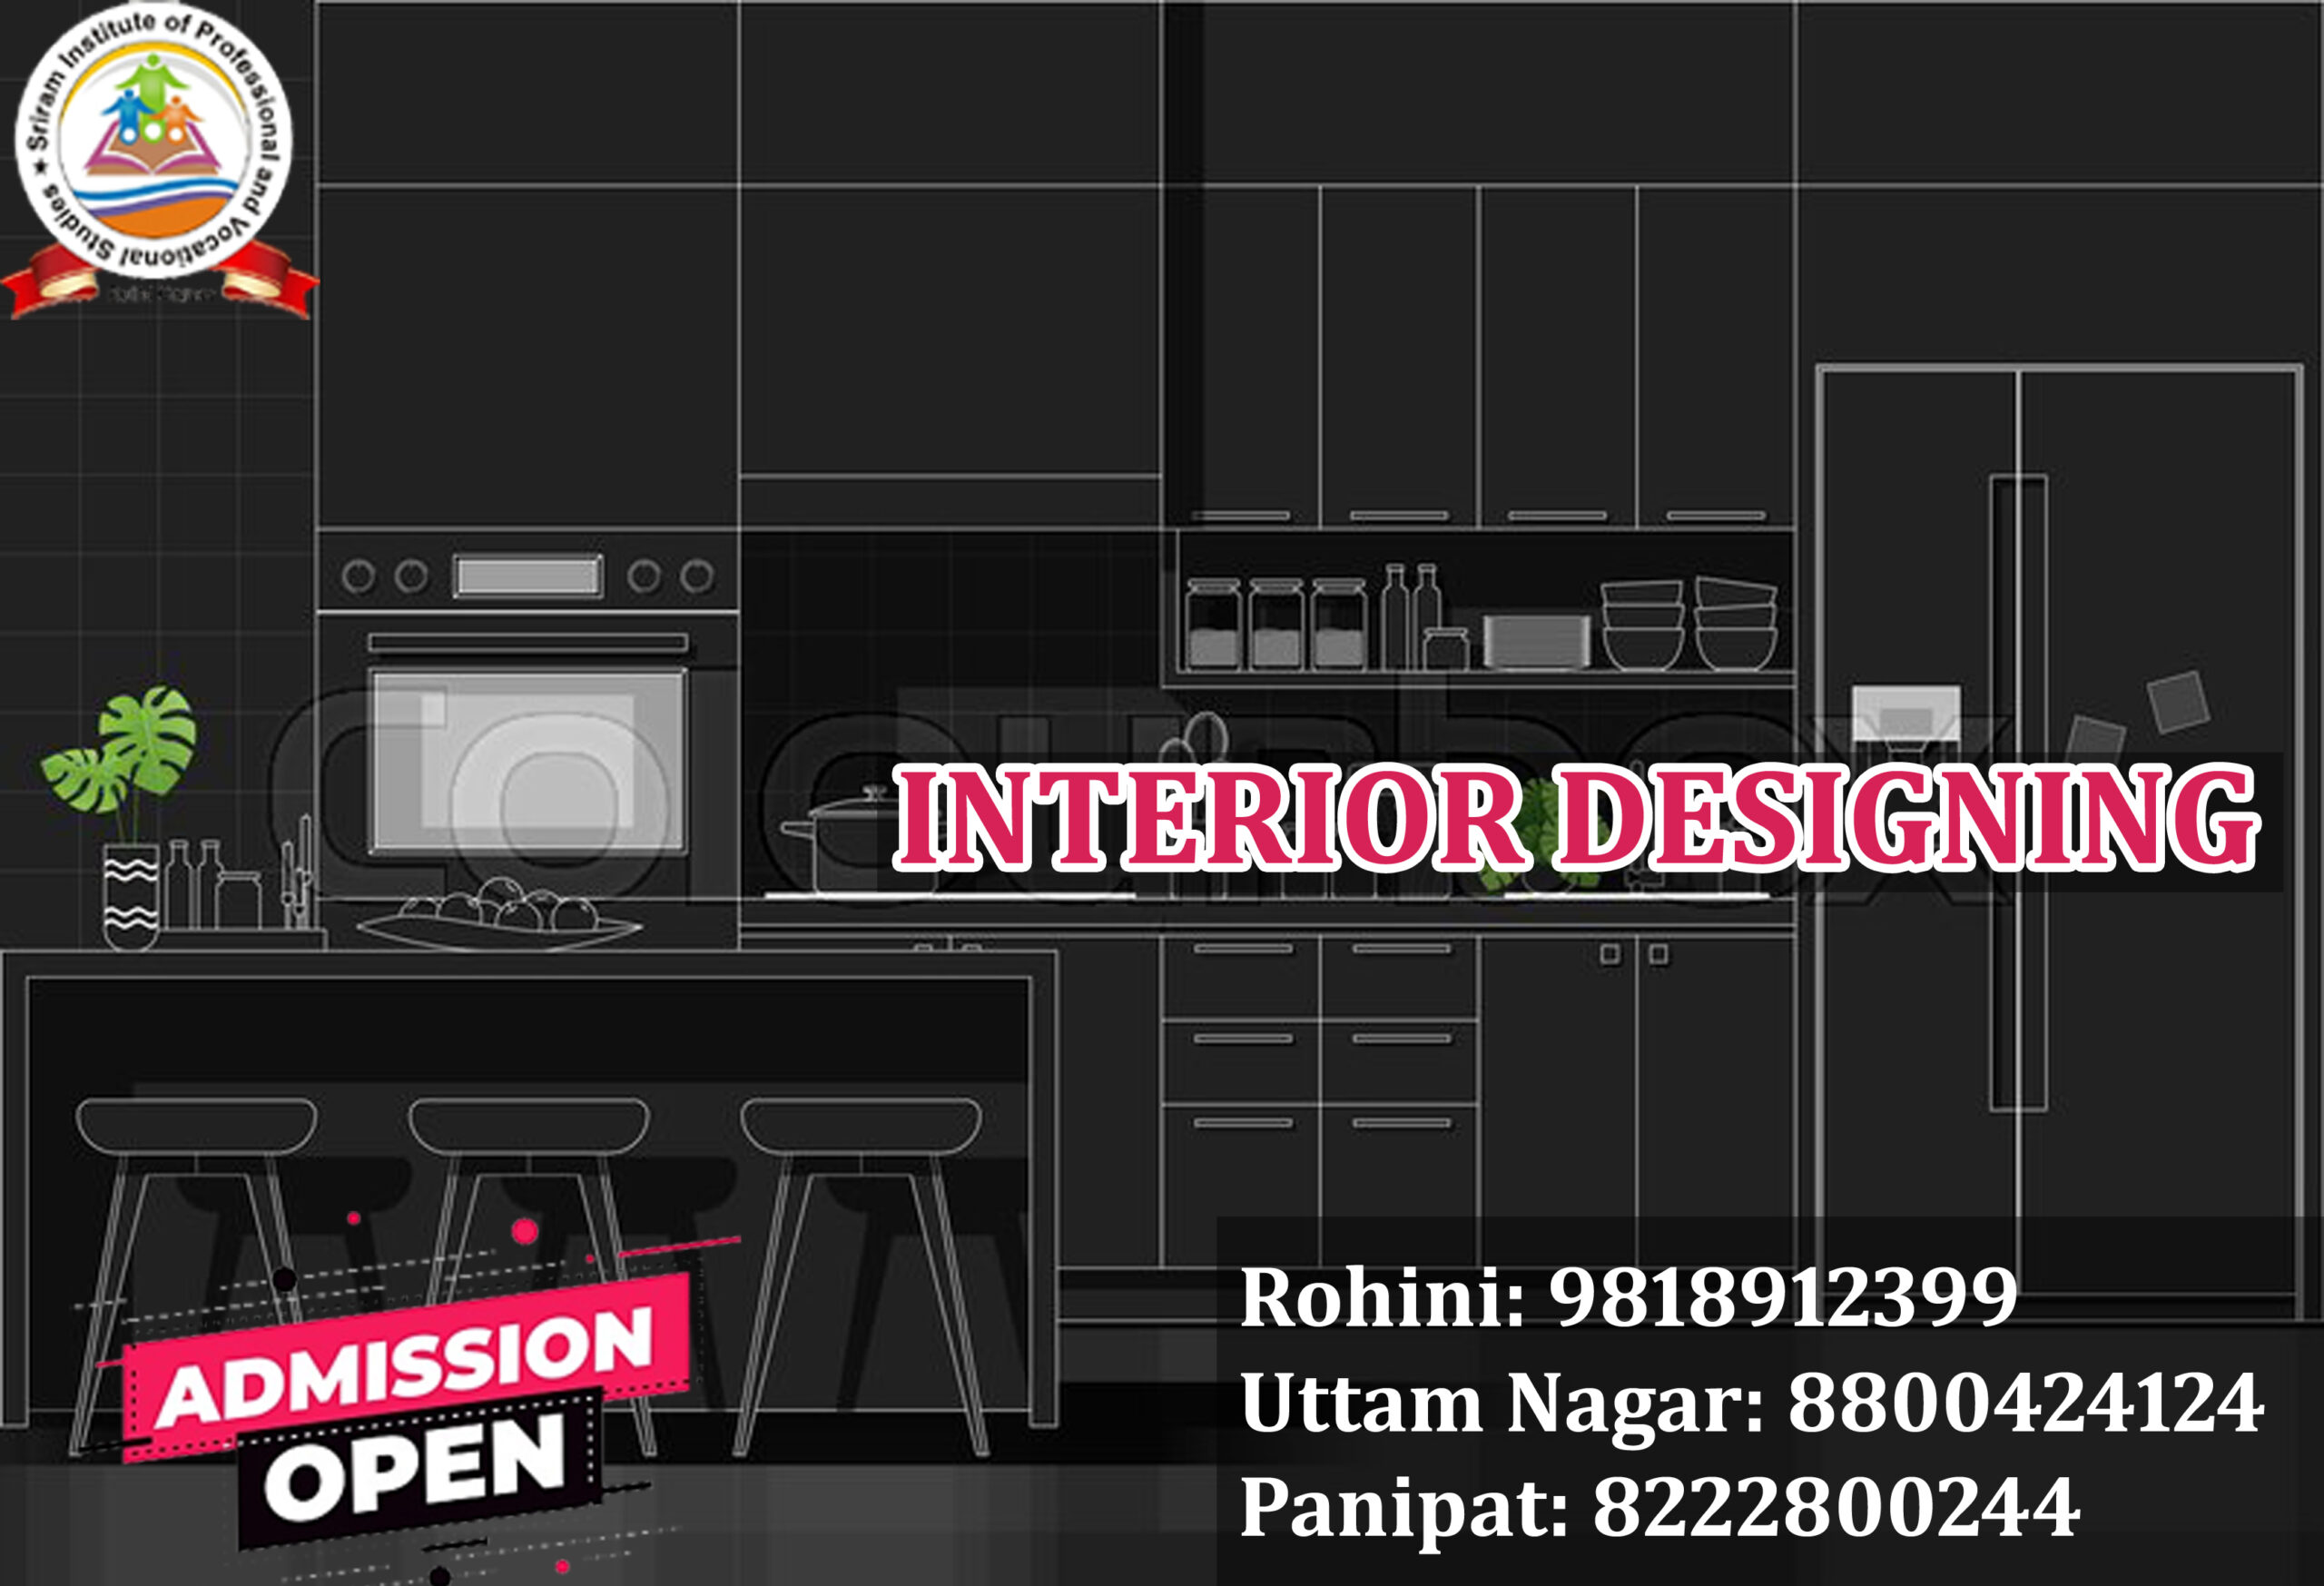 Best Interior Designing course in Rohini